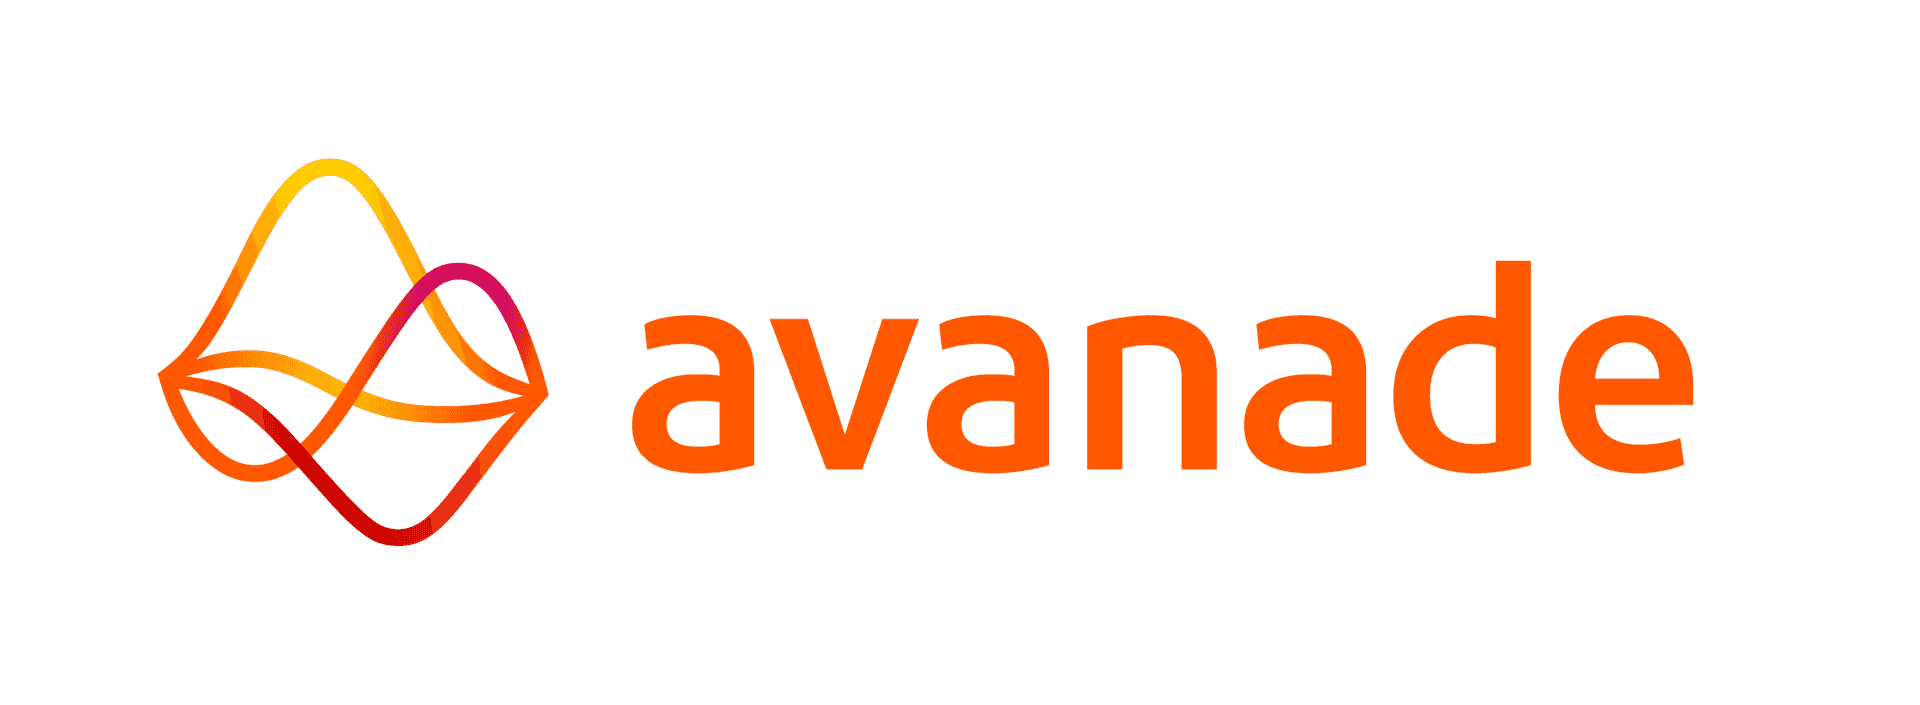 https://www.avanade.com/en/about-avanade/bob体育外网下载partnerships/databricks